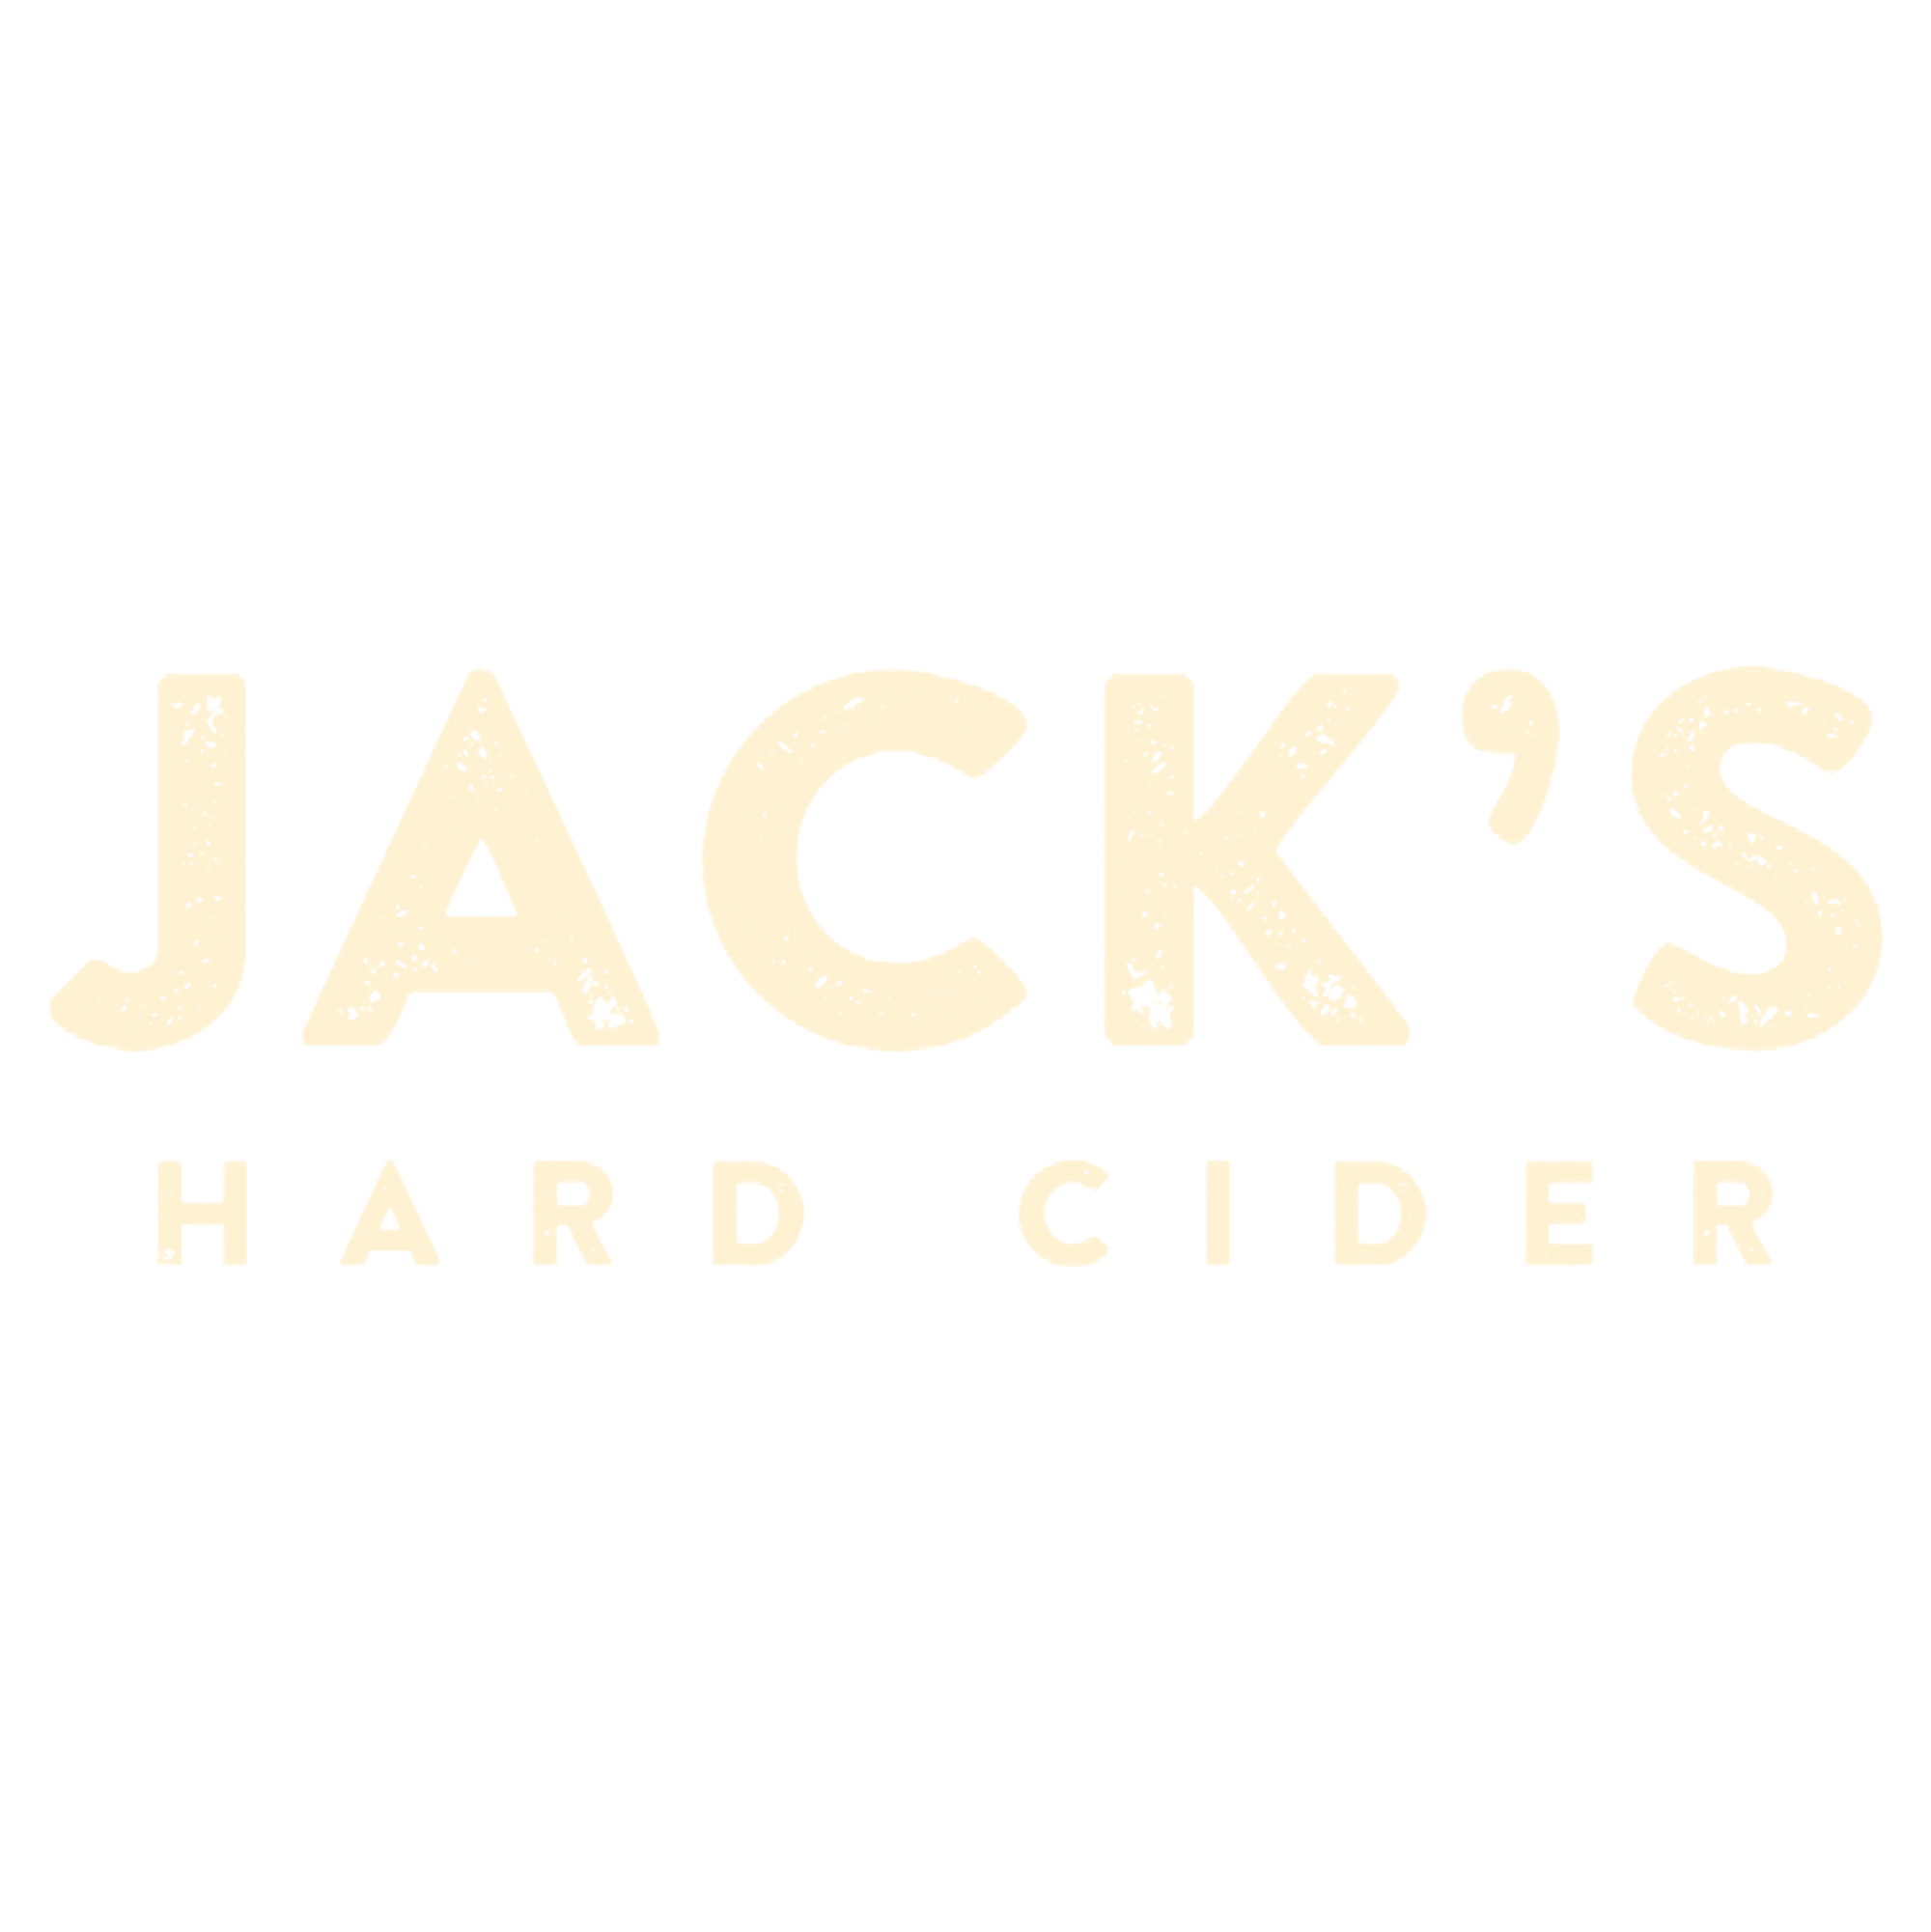 Jack's Hard Cider logo tan